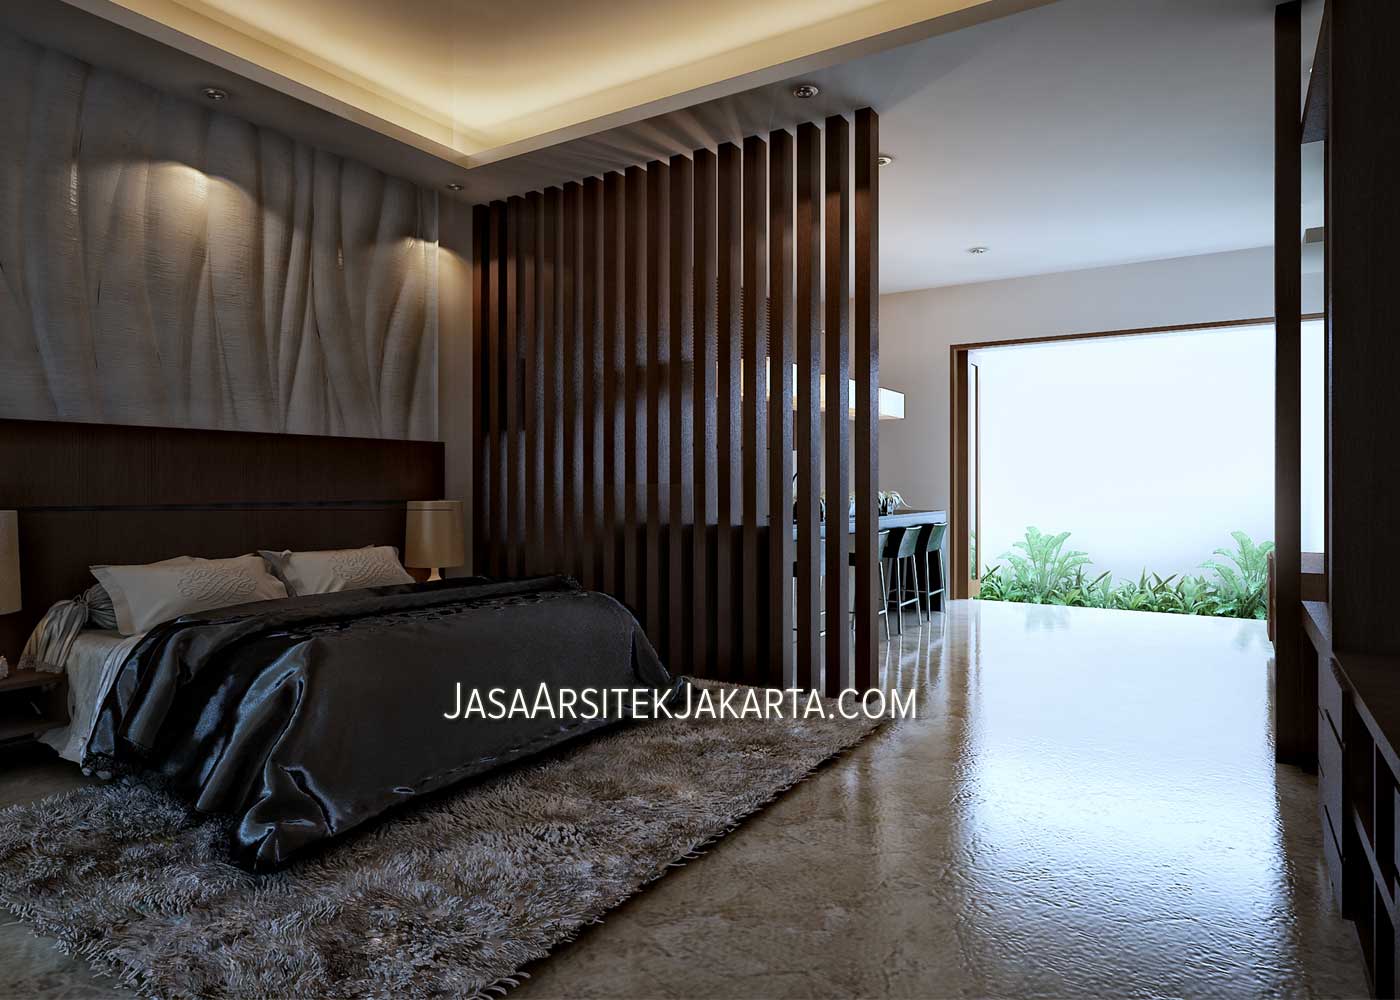 Desain Rumah Mewah Luas 900m2 Milik Bu Hasan Jakarta Model Rumah